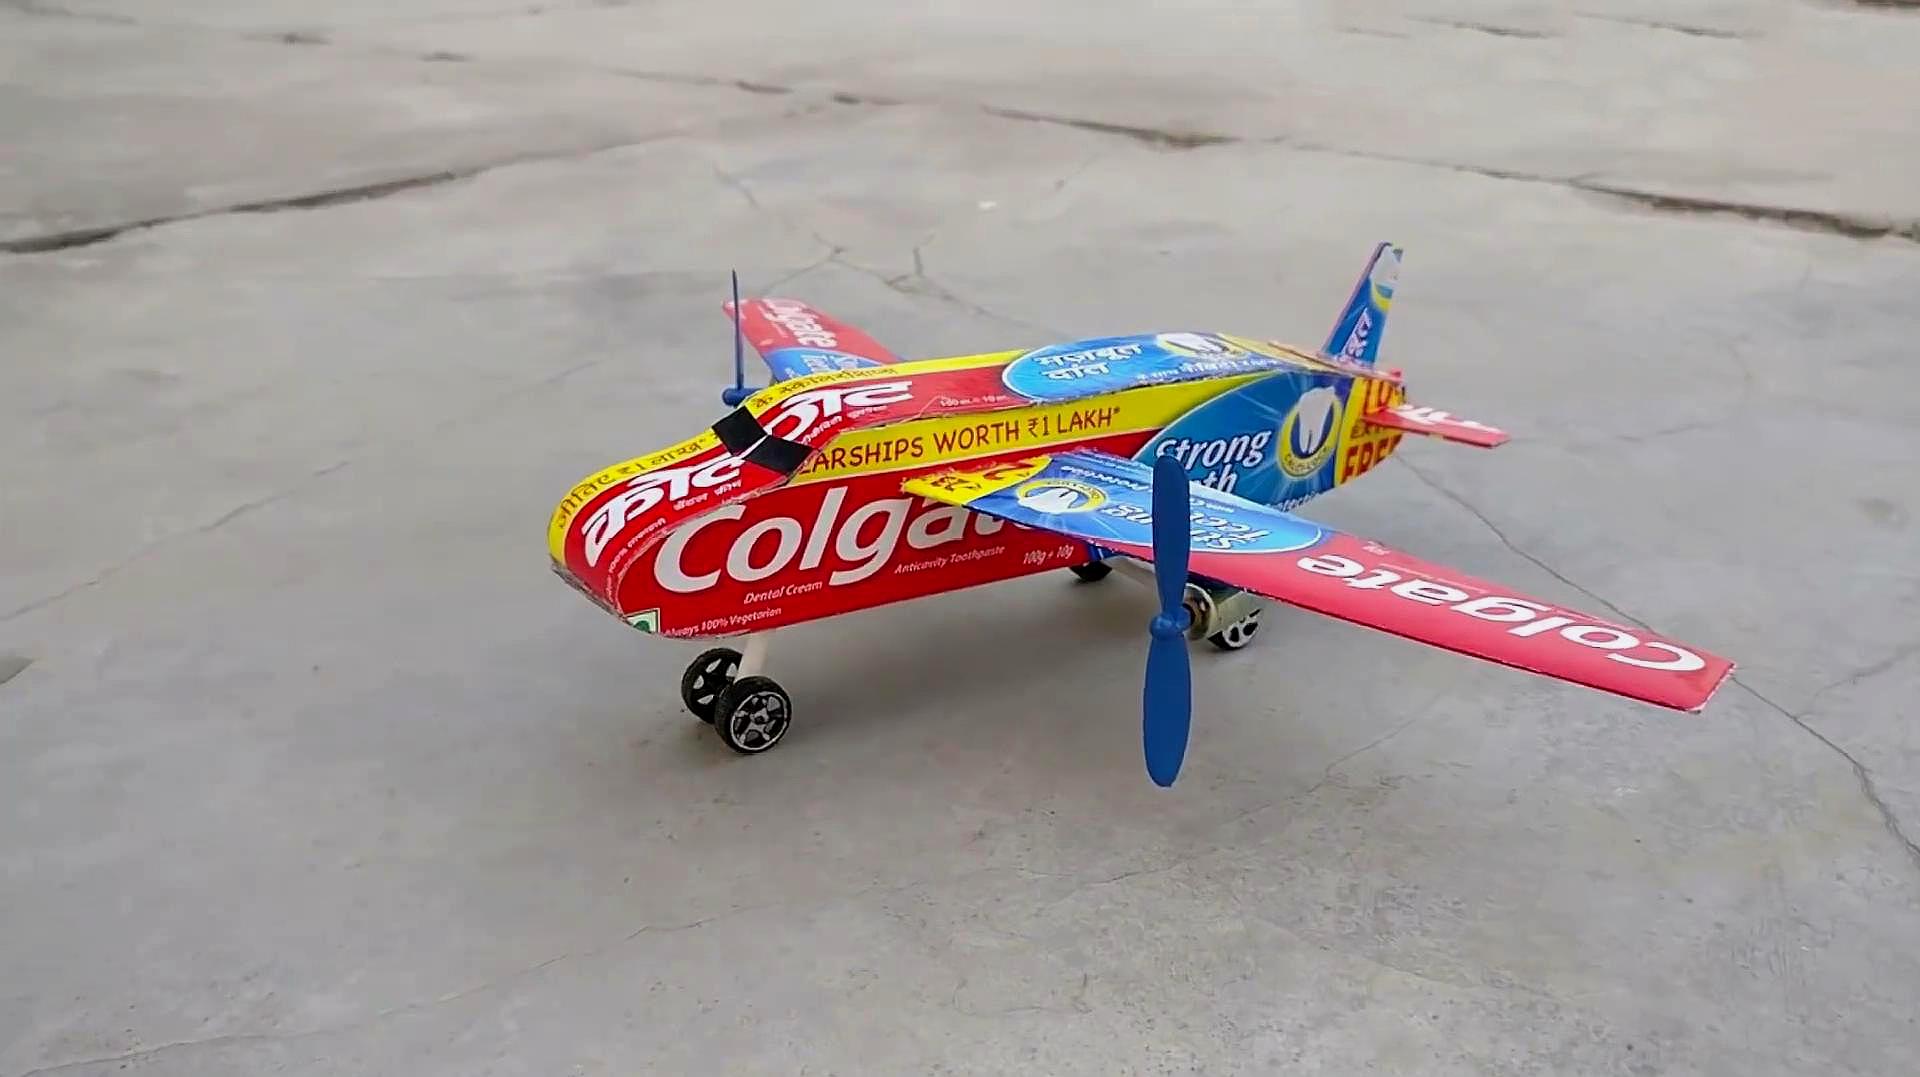 手工牛人用牙膏盒制作模型飞机,这可是高级版的